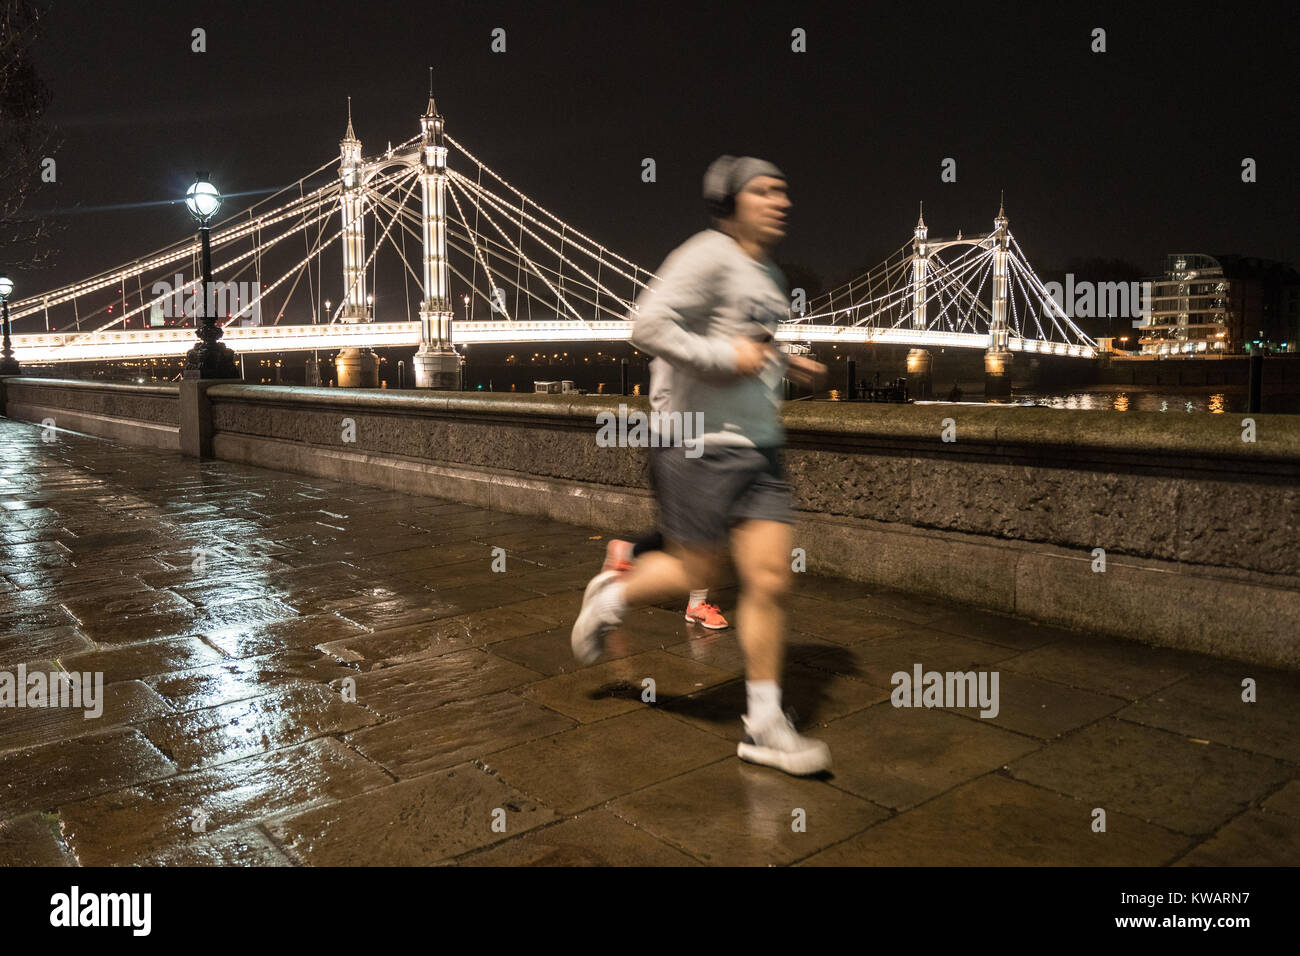 Londra, Regno Unito. 02Jan, 2018. Un uomo di jogging sul marciapiede vicino a Albert Bridge in una piovosa notte a Londra. Foto Data: Martedì, 2 gennaio 2018. Credito: Roger Garfield/Alamy Live News Foto Stock